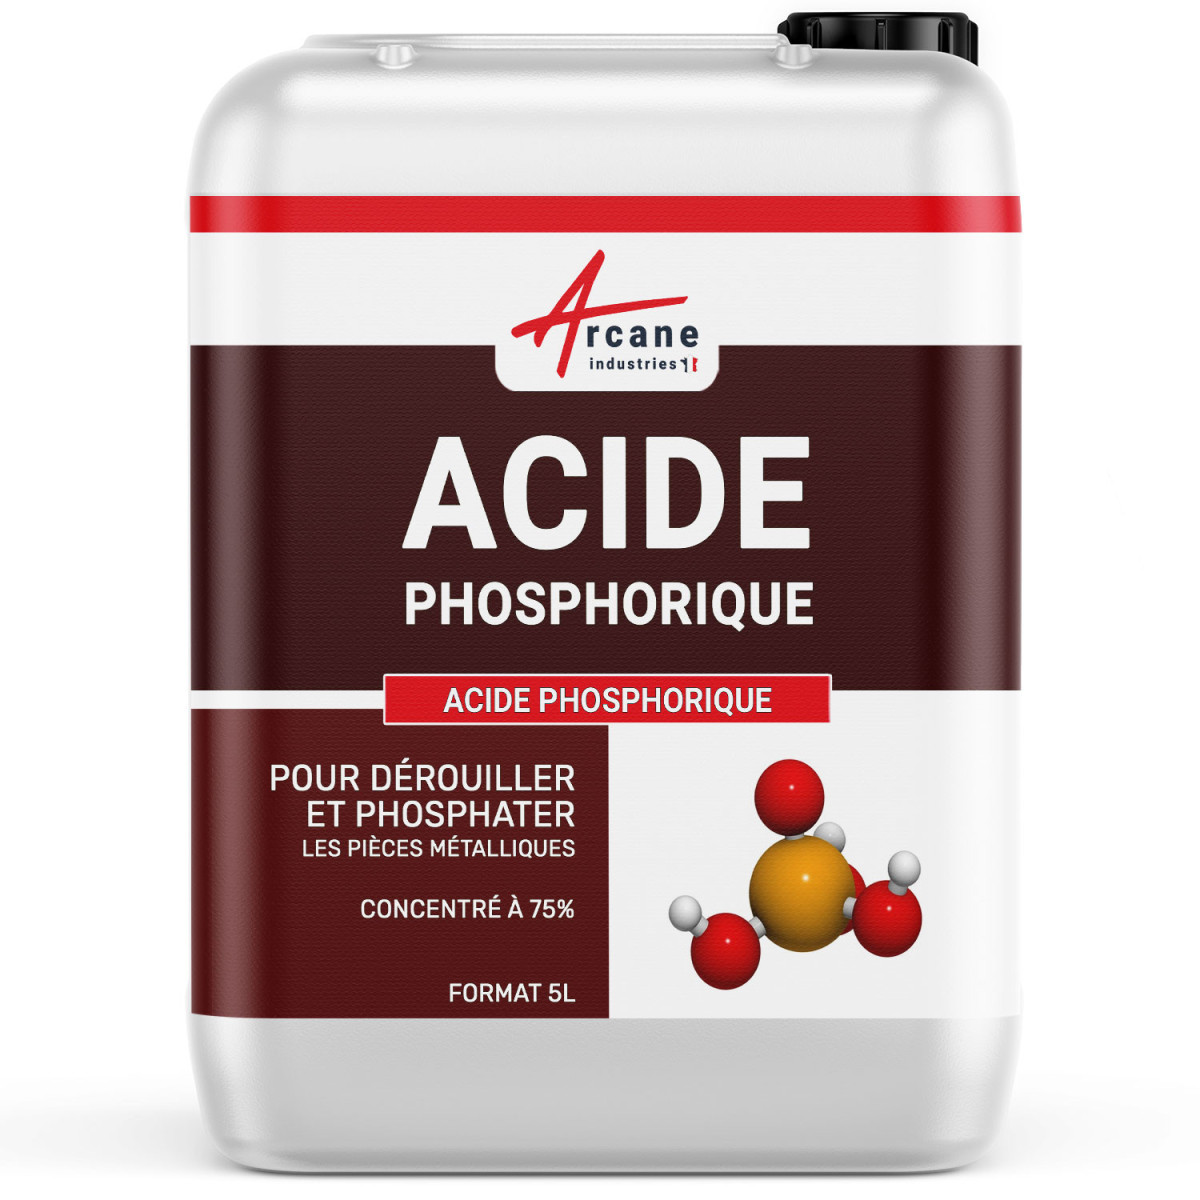 Acide phosphorique dérouiller phosphater pièces métalliques